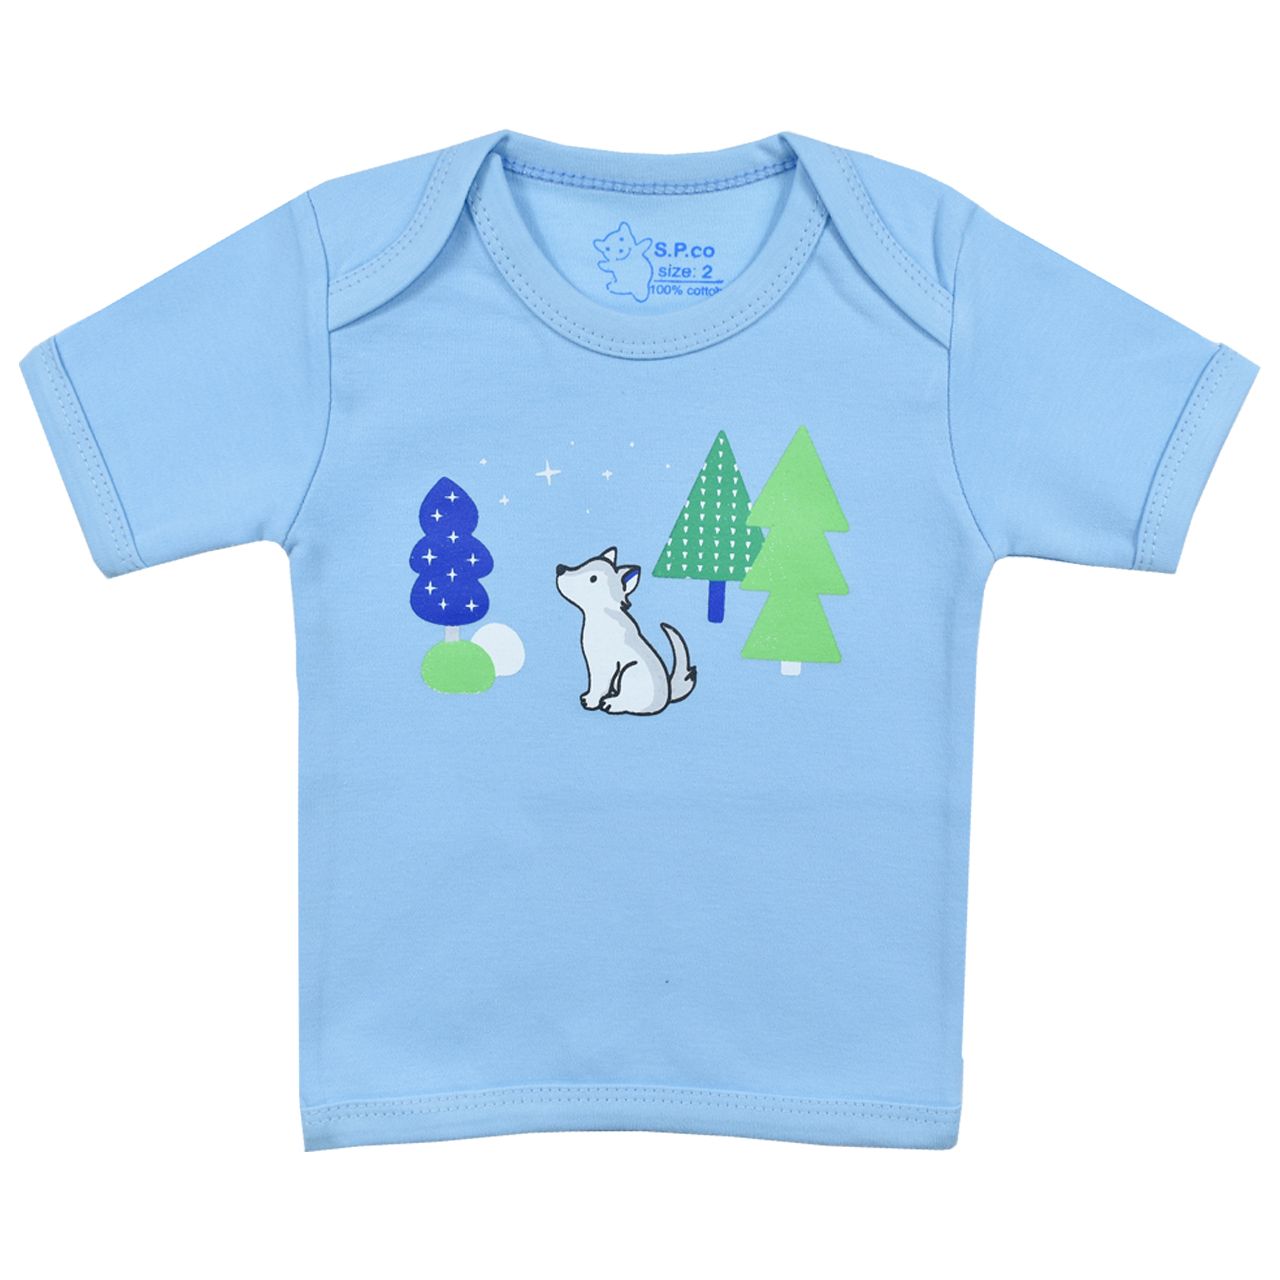 تی شرت آستین کوتاه نوزادی اسپیکو کد 300 -4 بسته دو عددی -  - 3